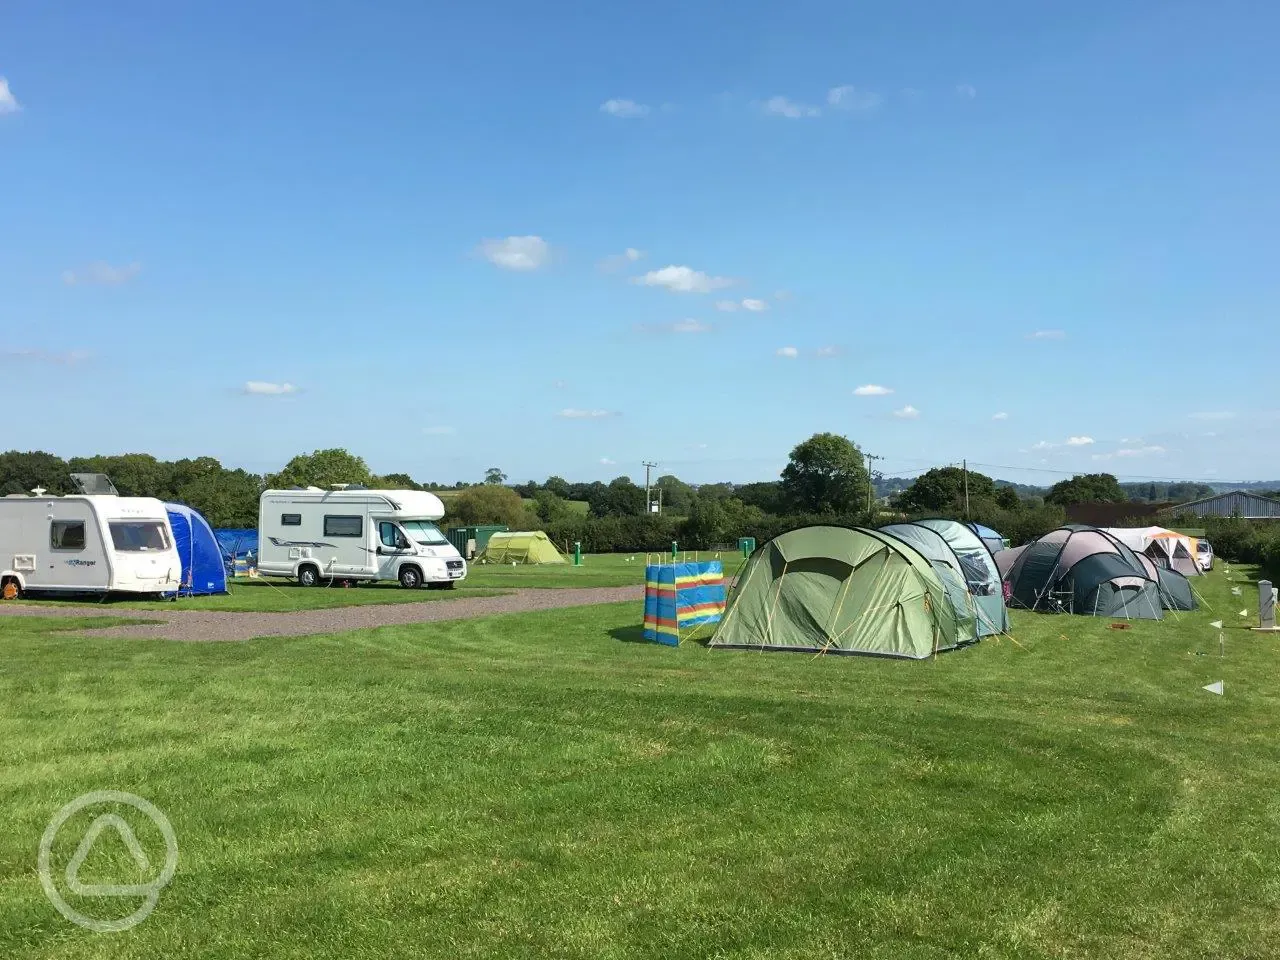 We love Tents, Campervans, Motorhomes and Caravans